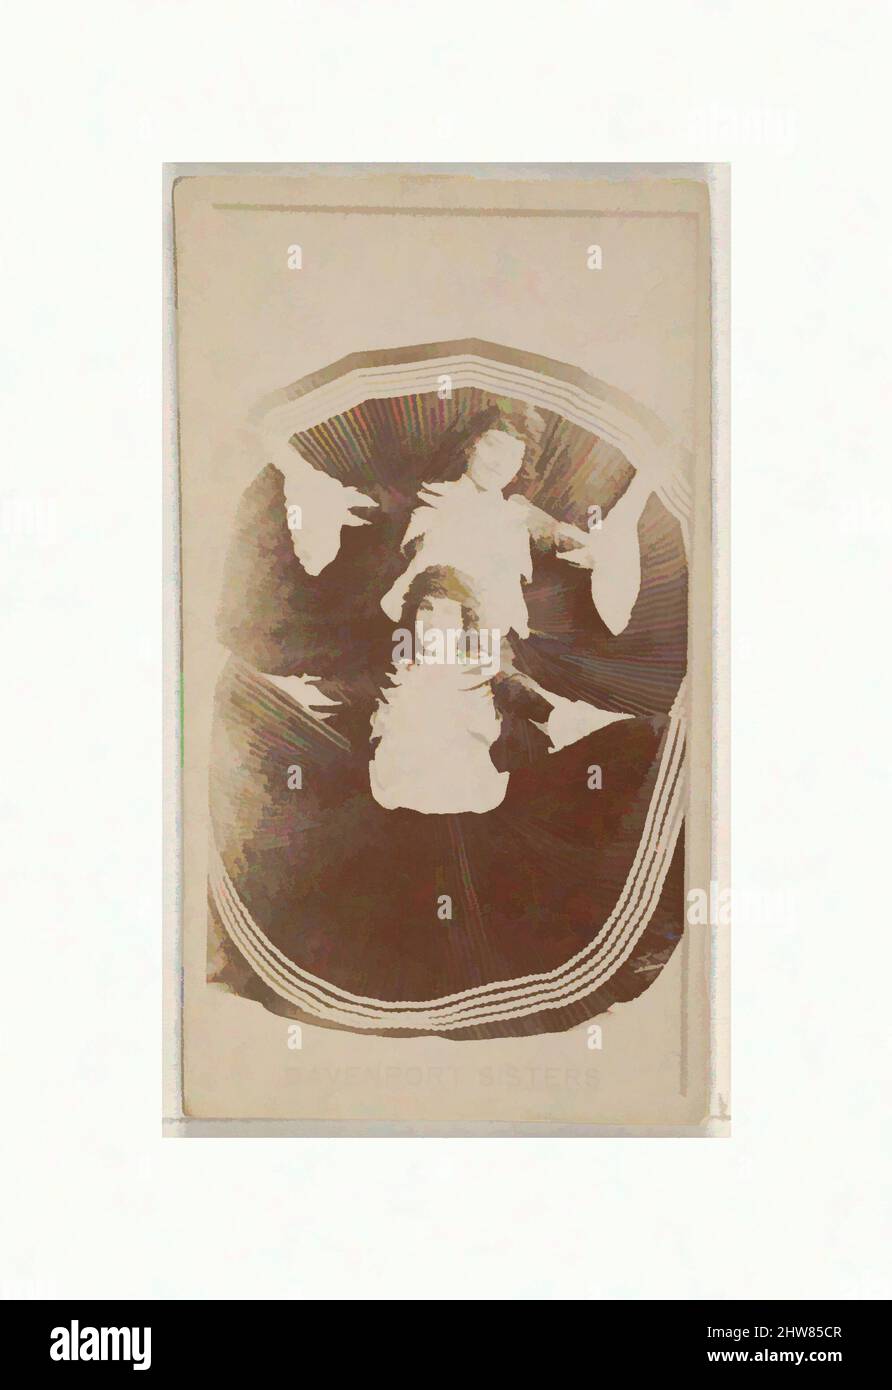 Arte ispirata da Davenport Sisters, dalla serie Actors and Actres (N45, Type 8) per le sigarette Virginia Brights, ca. 1888, fotografia albume, foglio: 2 5/8 x 1 1/2 pollici (6,6 x 3,8 cm), carte commerciali della serie 'Actors and Attres' (N45, Type 8), emesse circa 1888 di Allen, opere classiche modernizzate da Artotop con un tuffo di modernità. Forme, colore e valore, impatto visivo accattivante sulle emozioni artistiche attraverso la libertà delle opere d'arte in modo contemporaneo. Un messaggio senza tempo che persegue una nuova direzione selvaggiamente creativa. Artisti che si rivolgono al supporto digitale e creano l'NFT Artotop Foto Stock